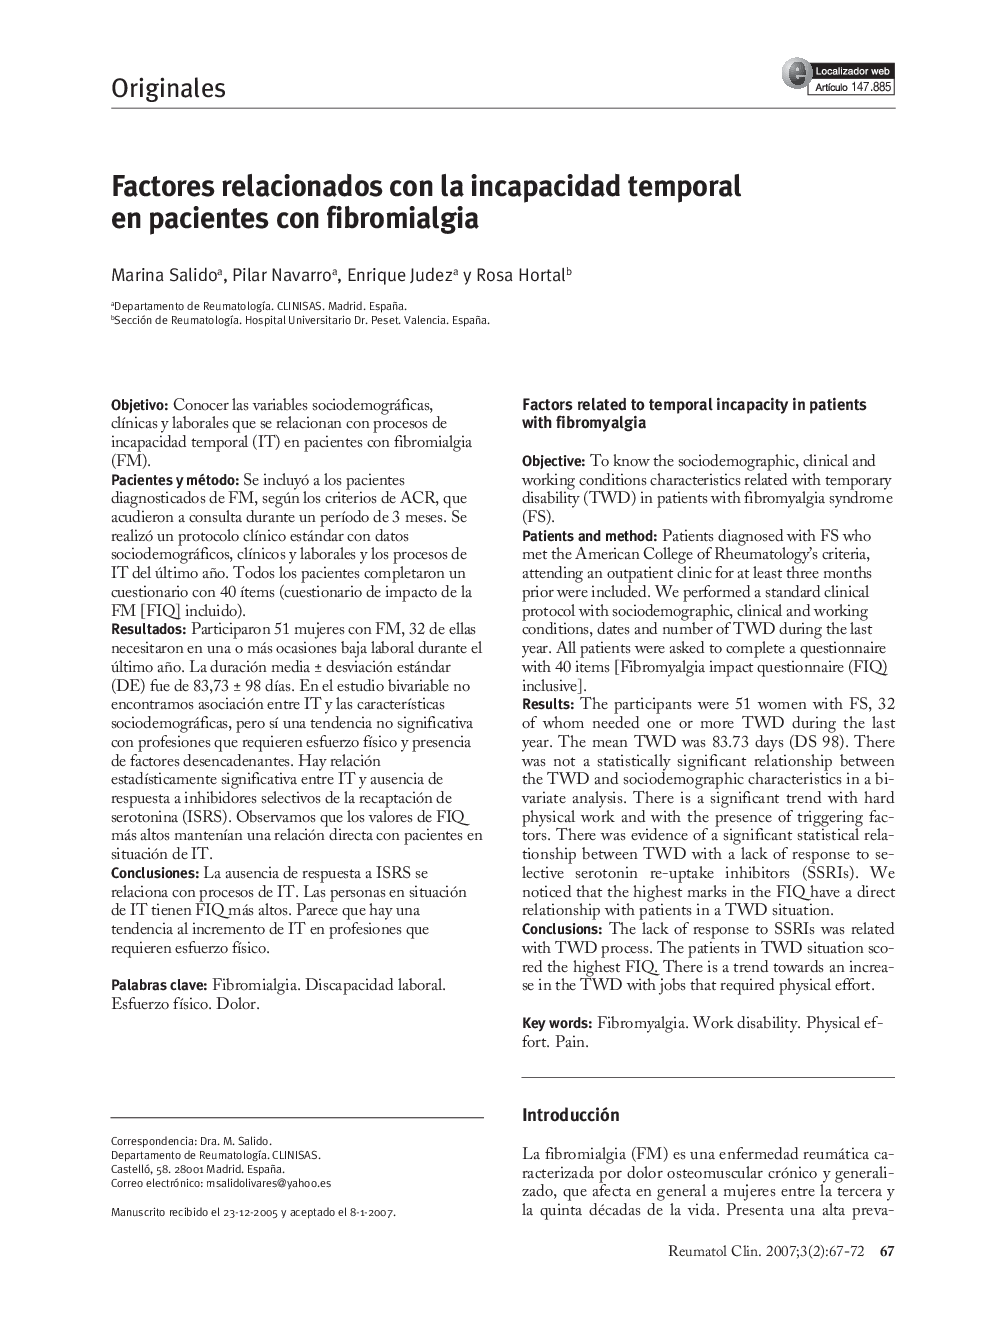 Factores relacionados con la incapacidad temporal en pacientes con fibromialgia